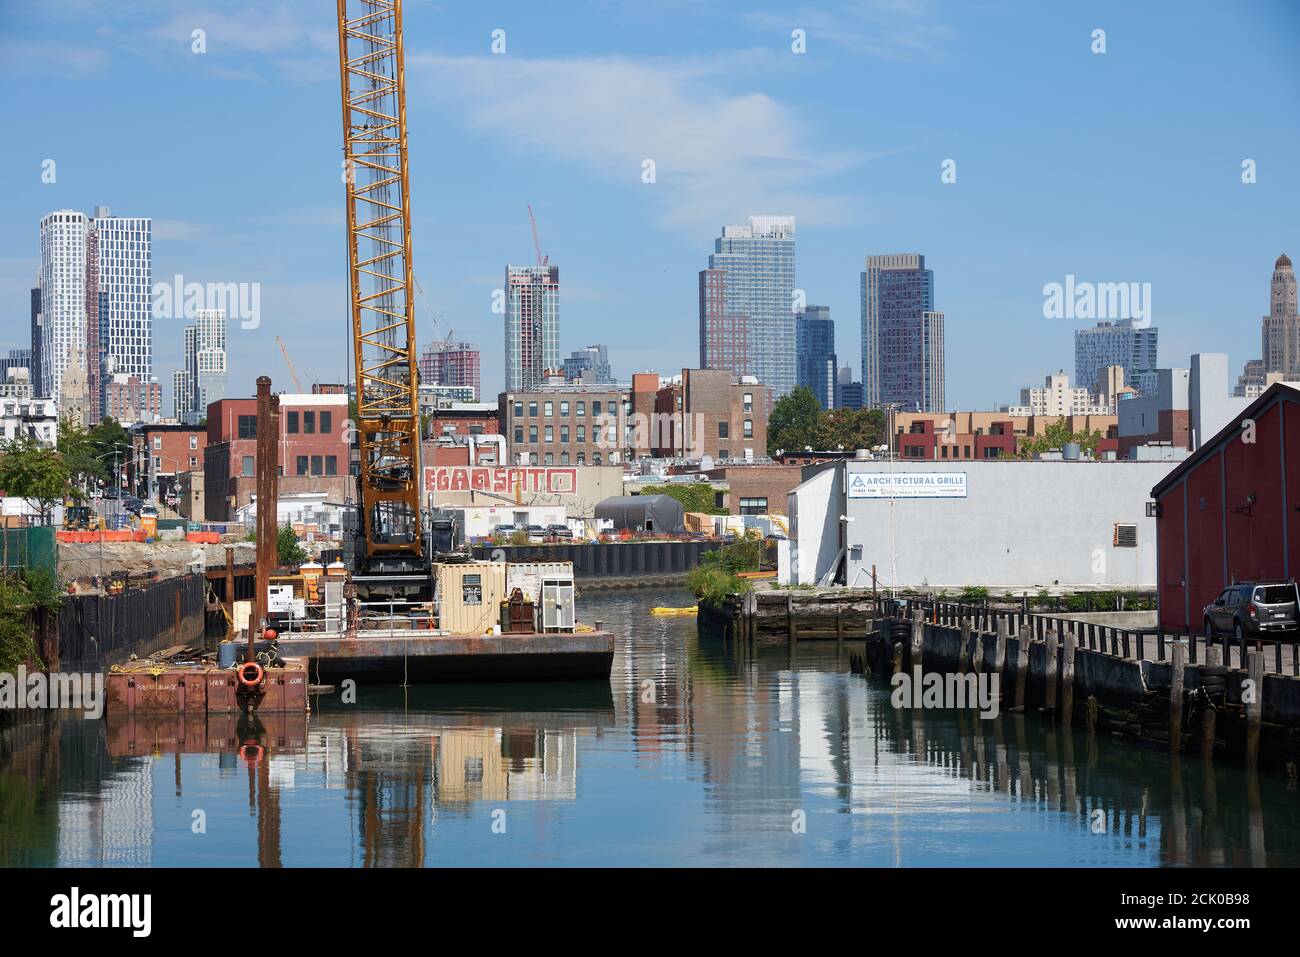 Vista del canale Gowanus a Brooklyn, NY con una chiatta e una gru da costruzione. Sullo sfondo sono i grattacieli del centro di Brooklyn. Foto Stock